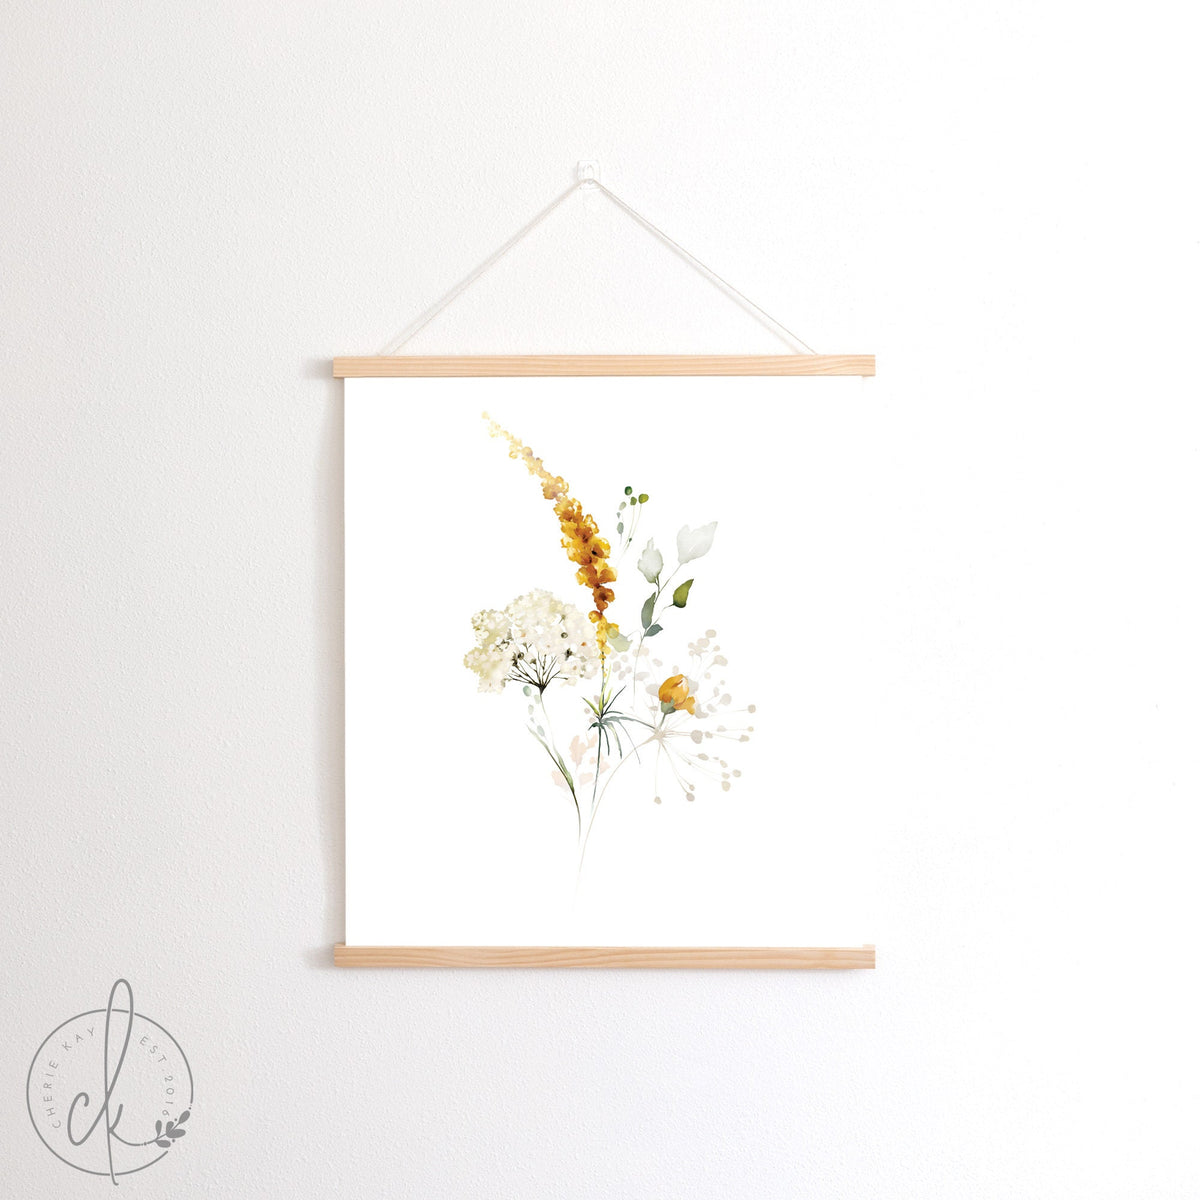 Wild Flower Bouquet | Canvas Wall Art | Botanical Wall Art | Living Room Wall Decor | Nursery Wall Art A